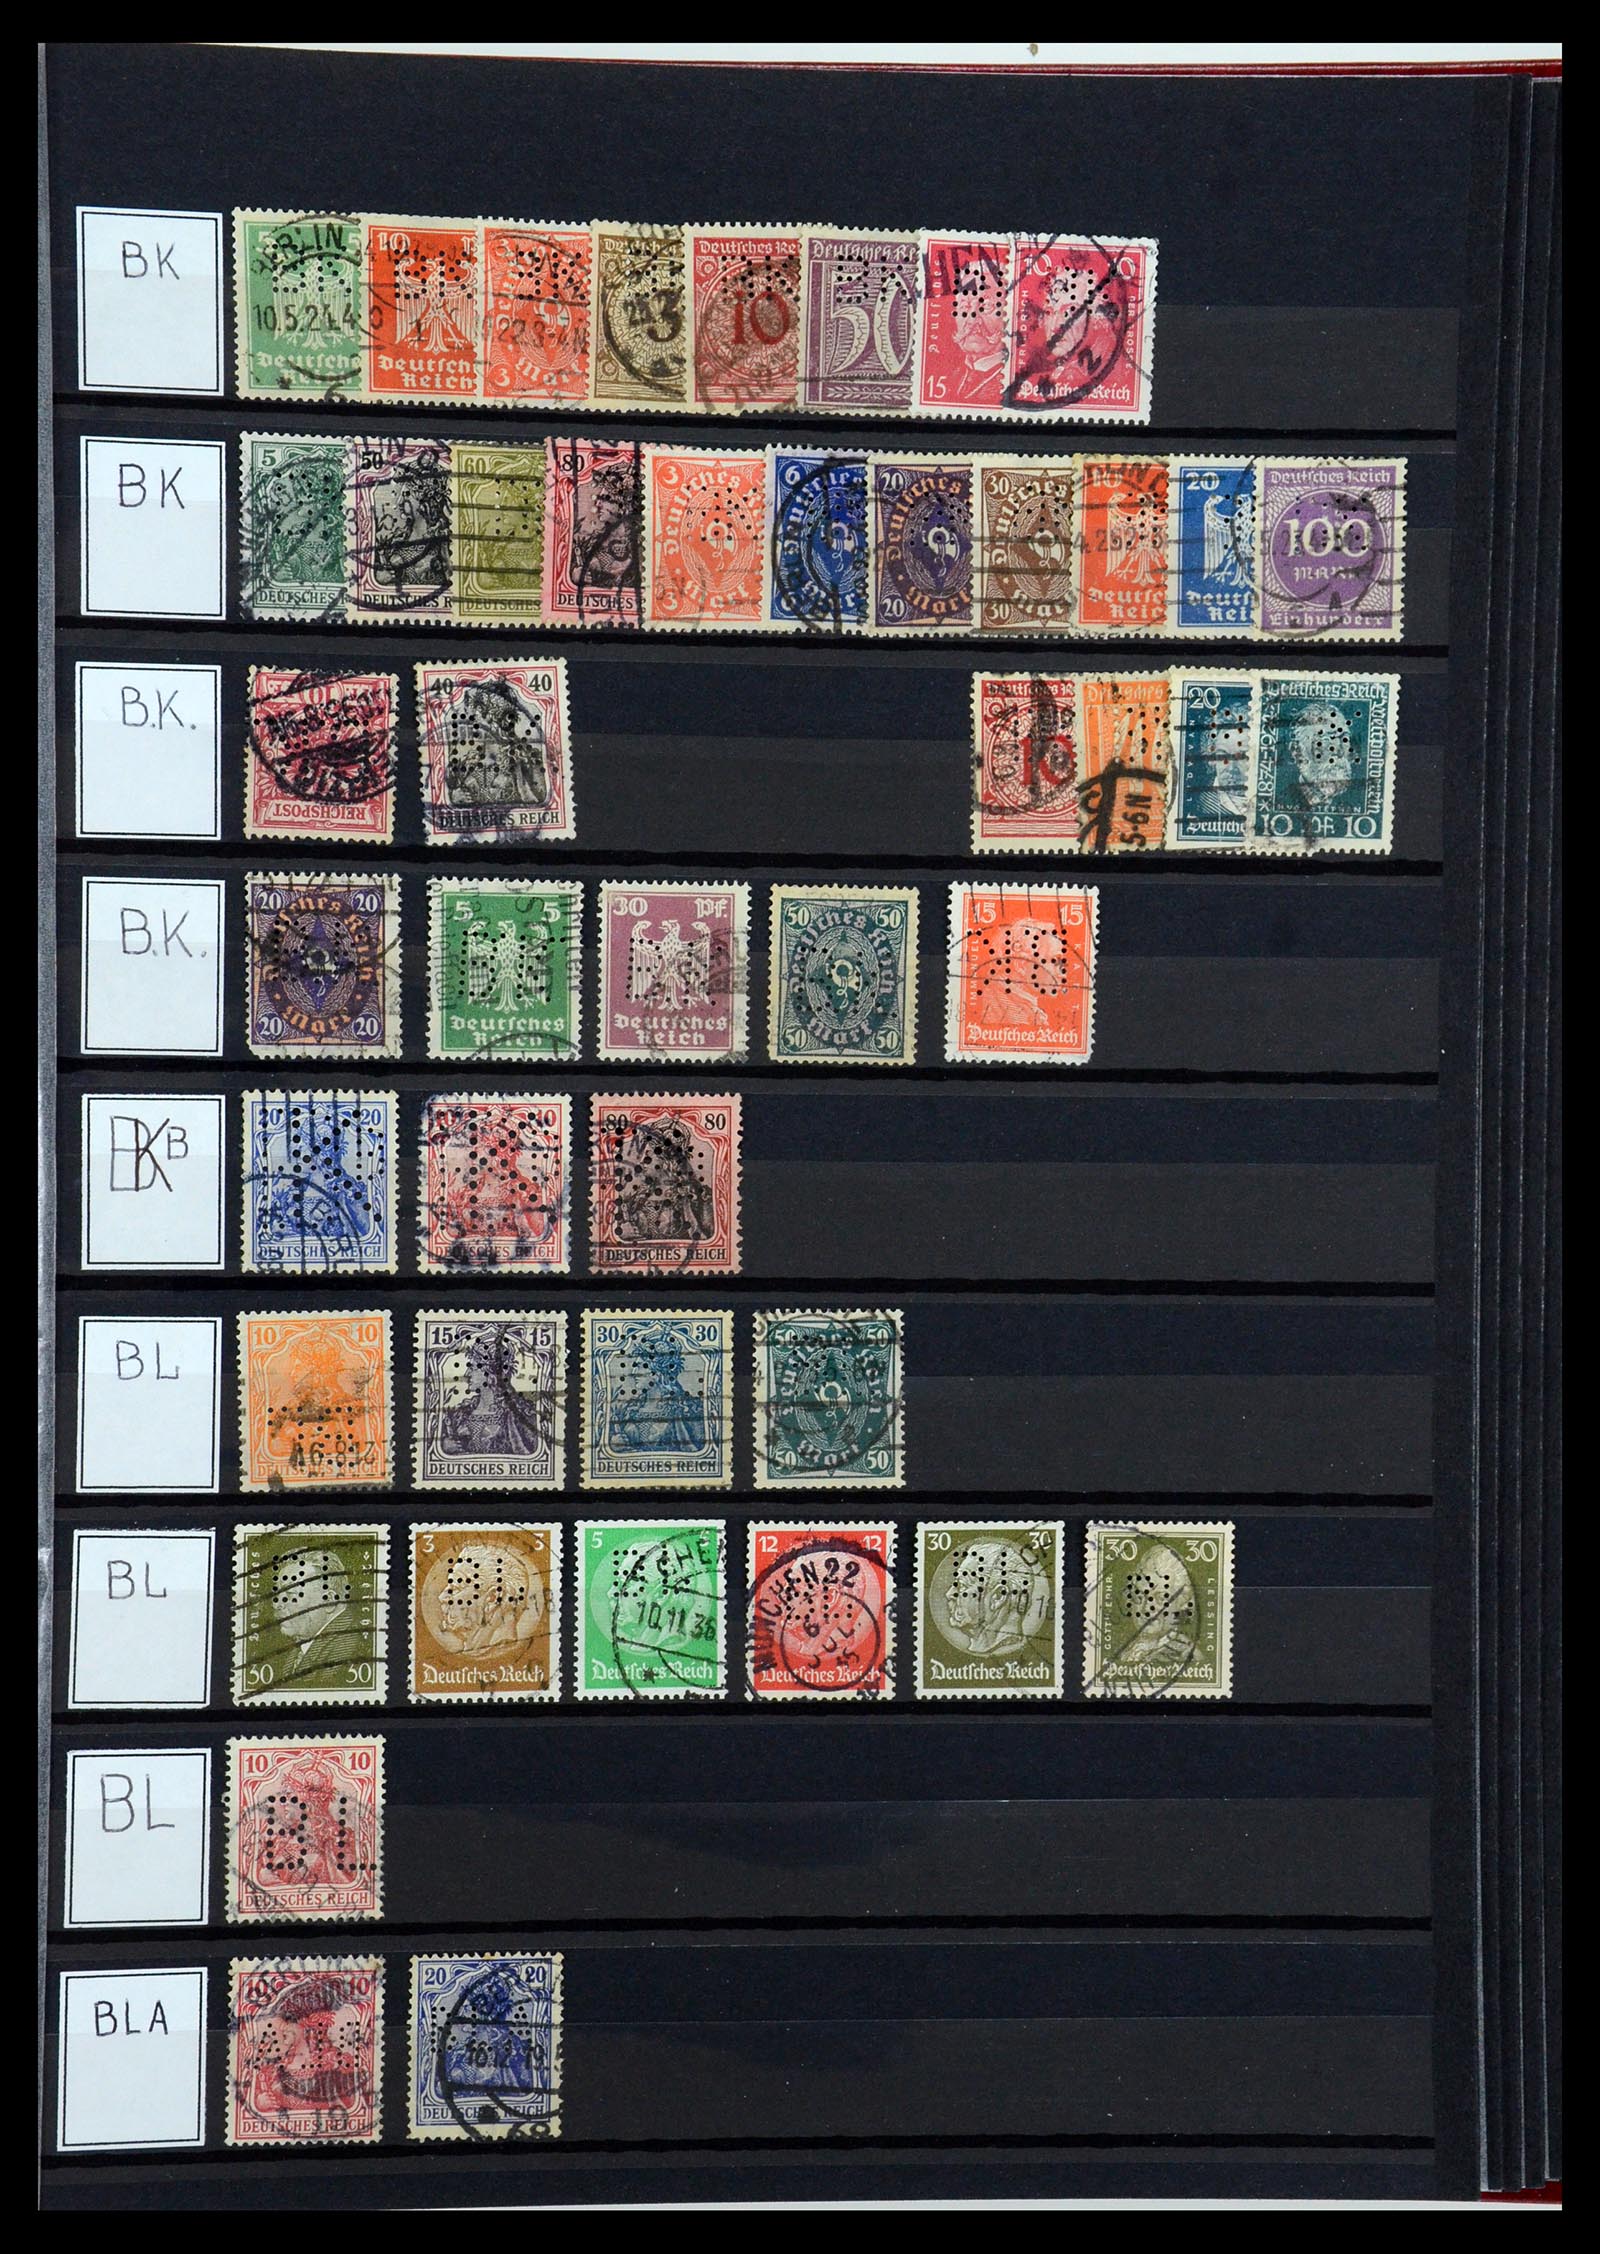 36405 043 - Stamp collection 36405 German Reich perfins 1880-1945.